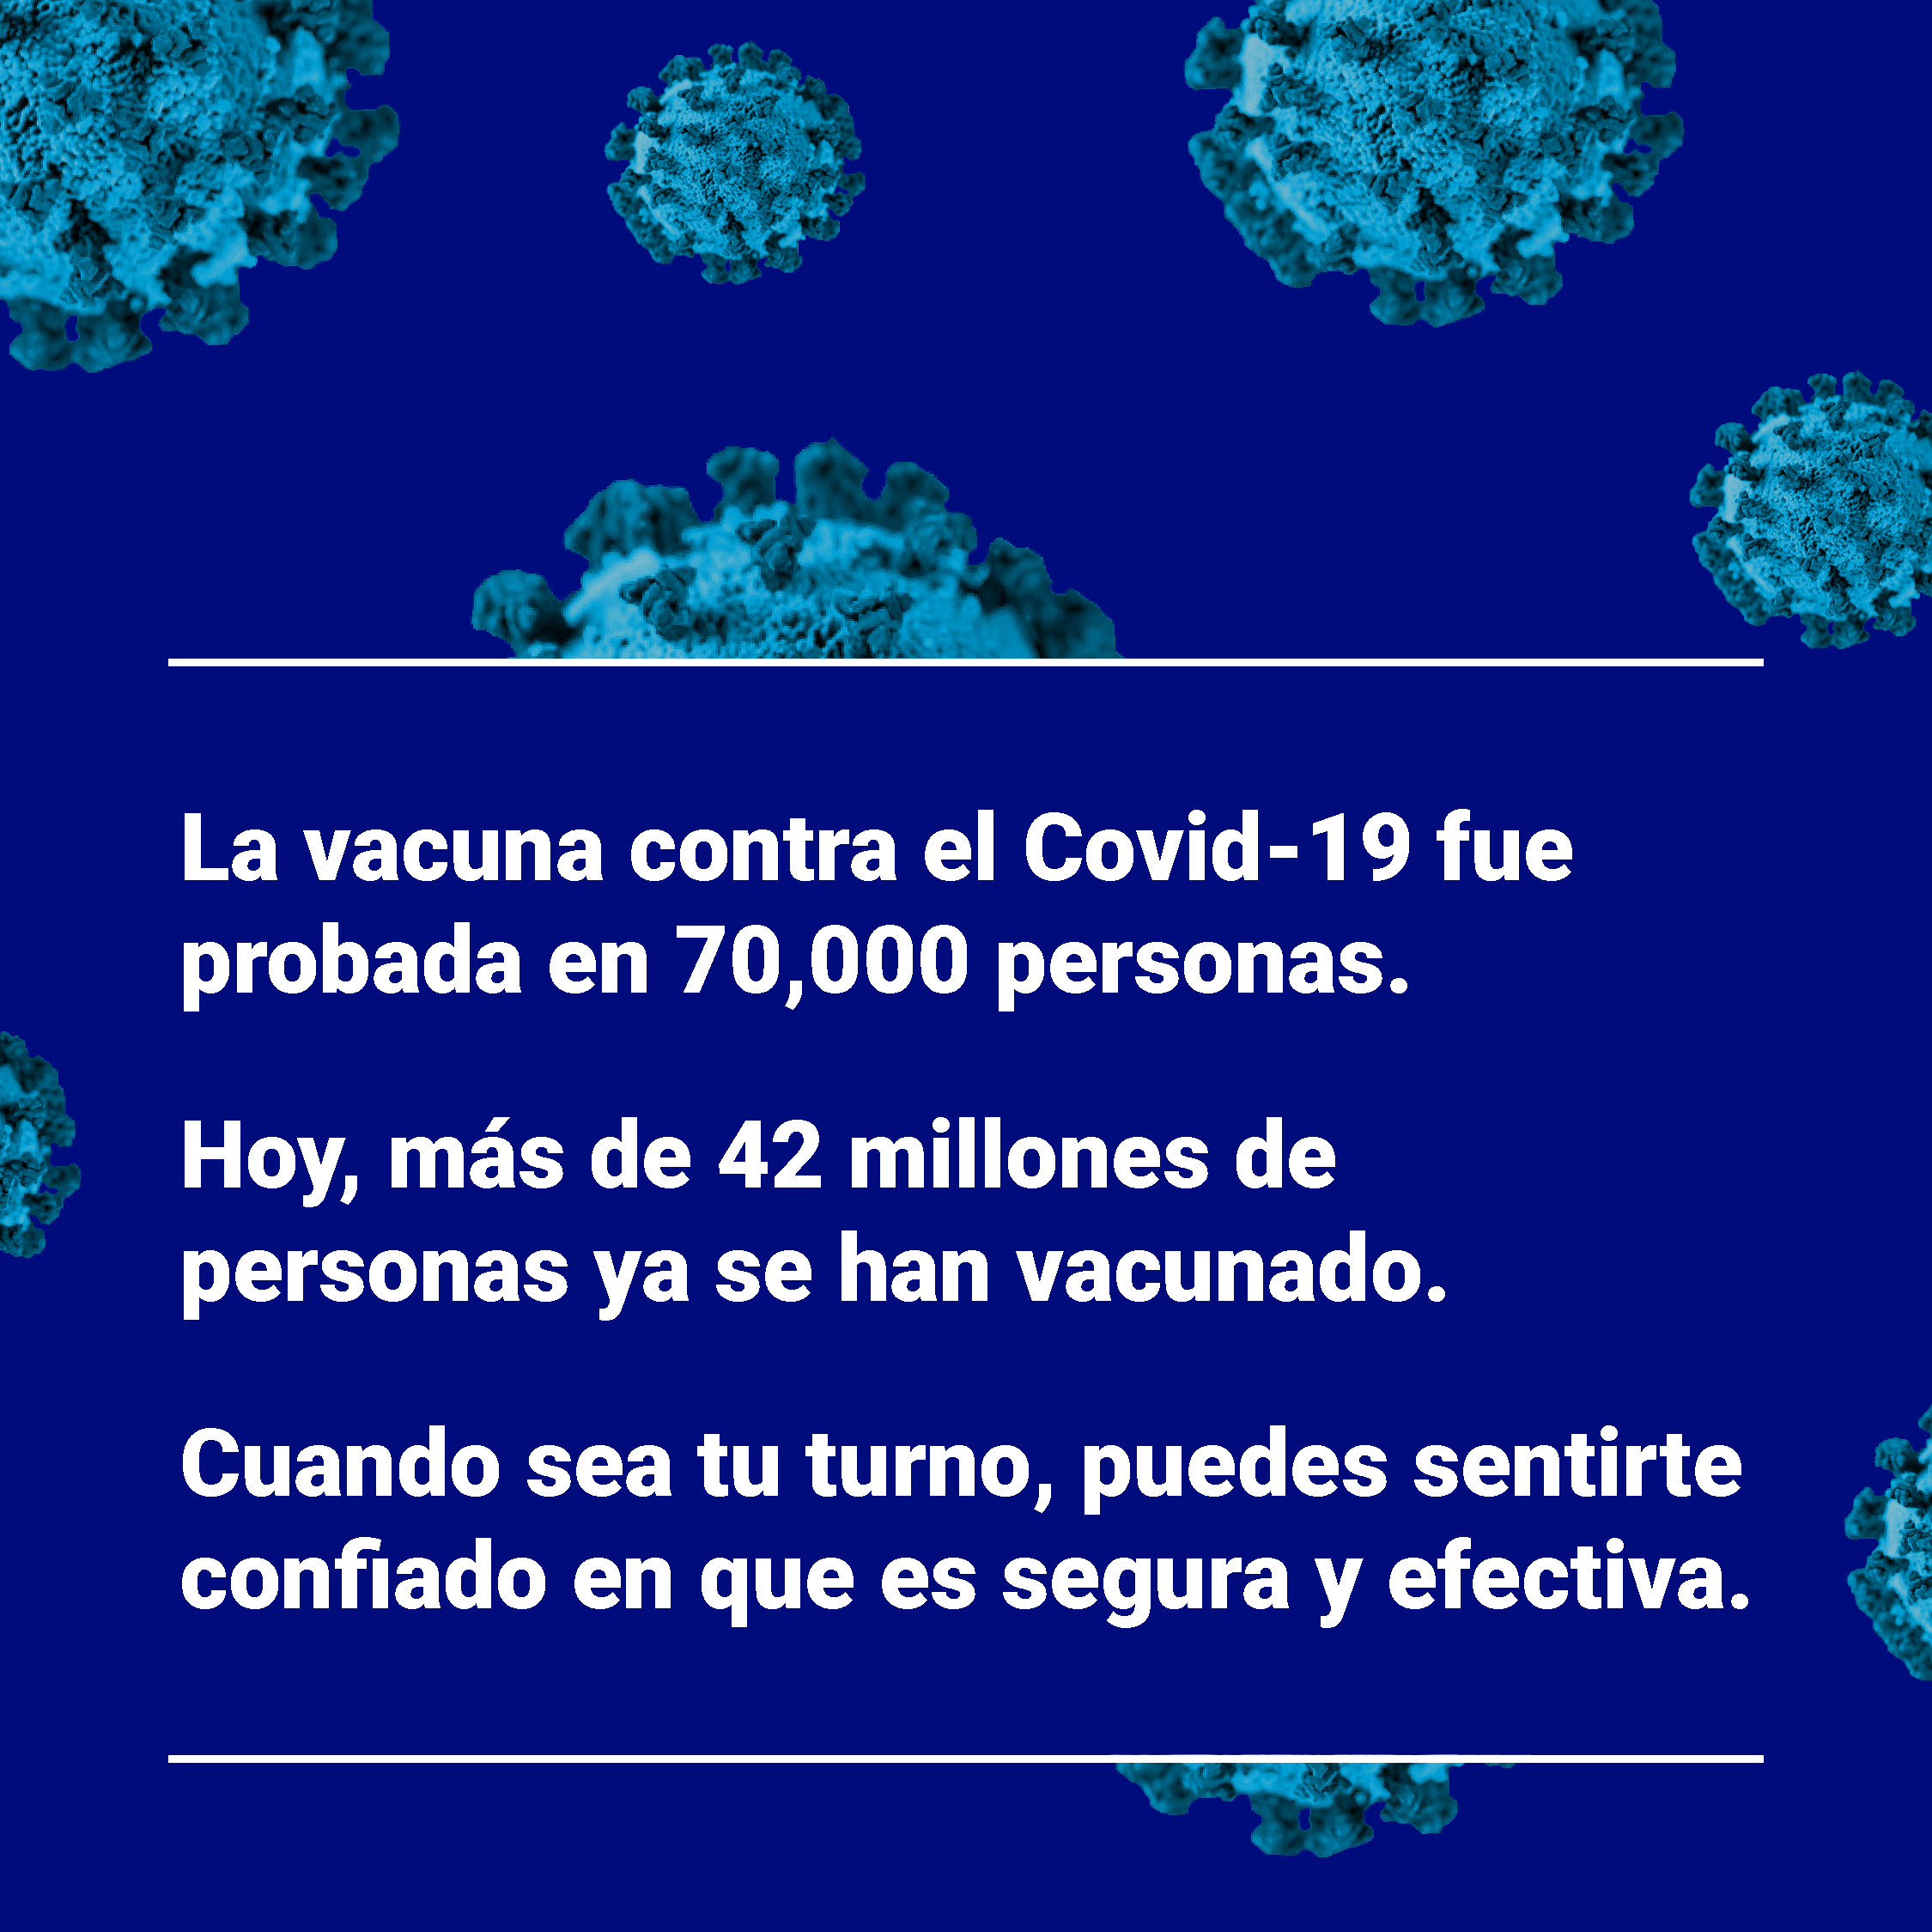 Cuatro Mensajes Que Pueden Motivar La Vacunacion Contra El Covid 19 The Behavioural Insights Team